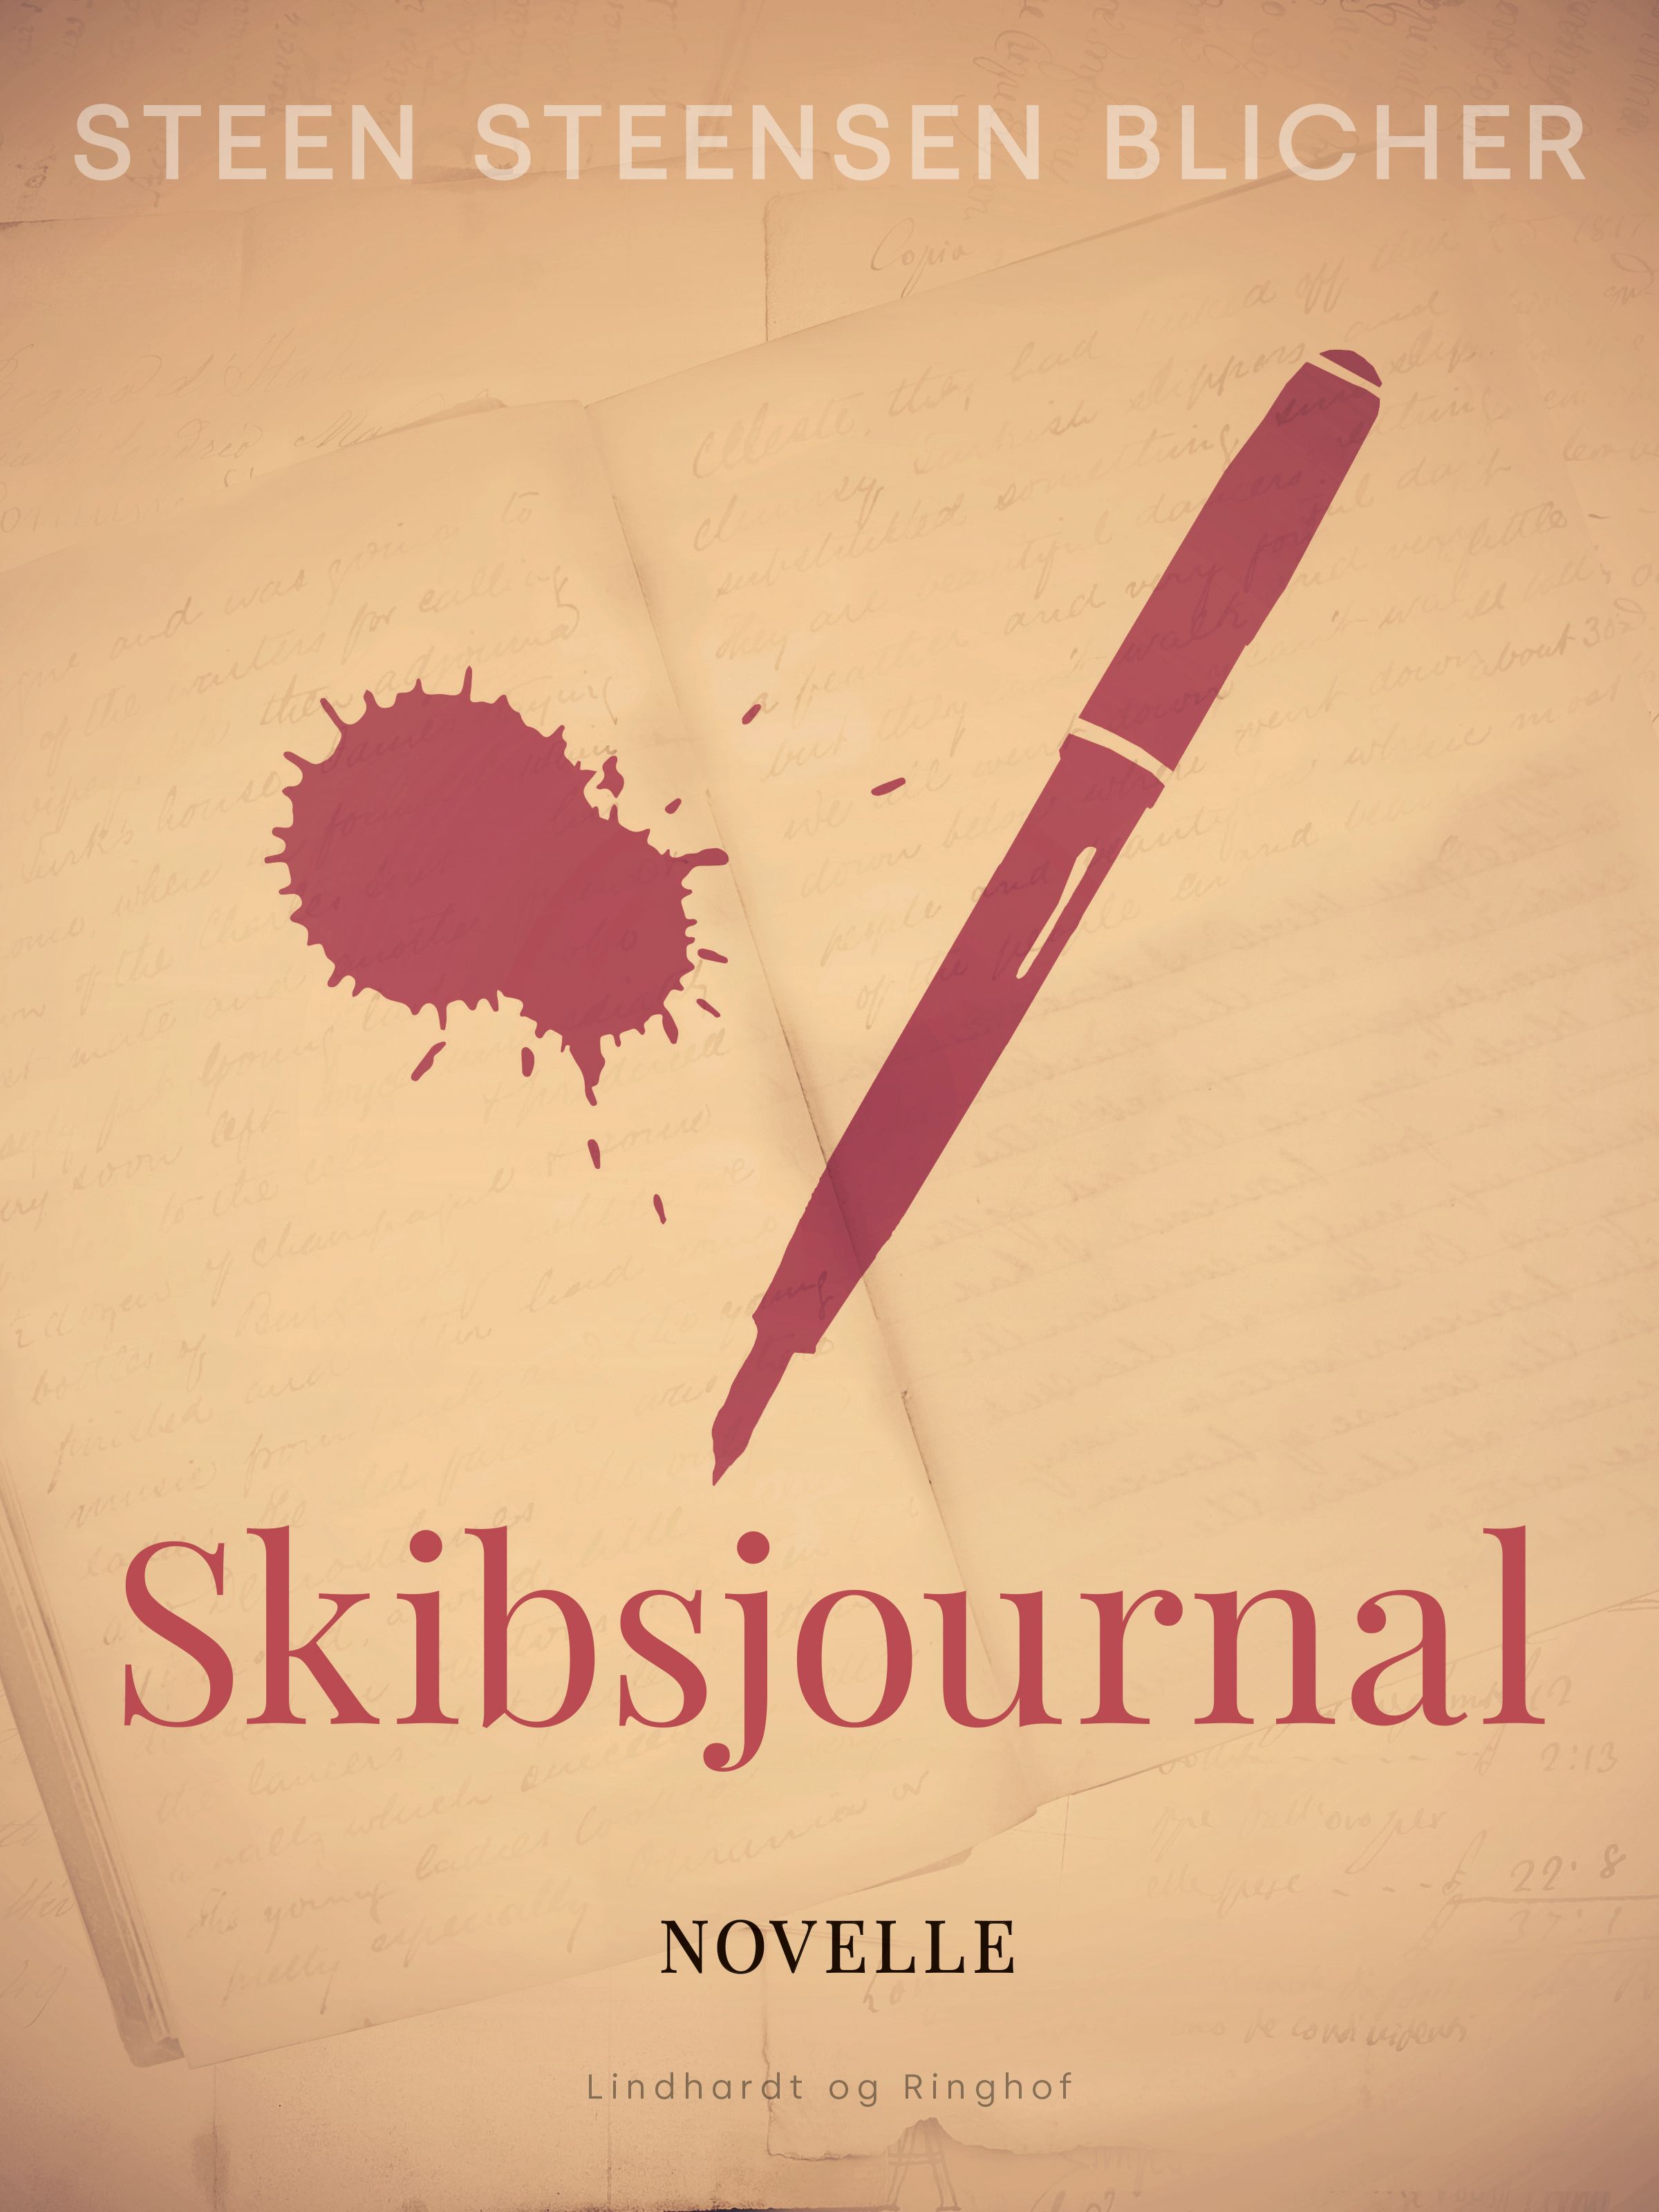 Skibsjournal, e-bok av Steen Steensen Blicher